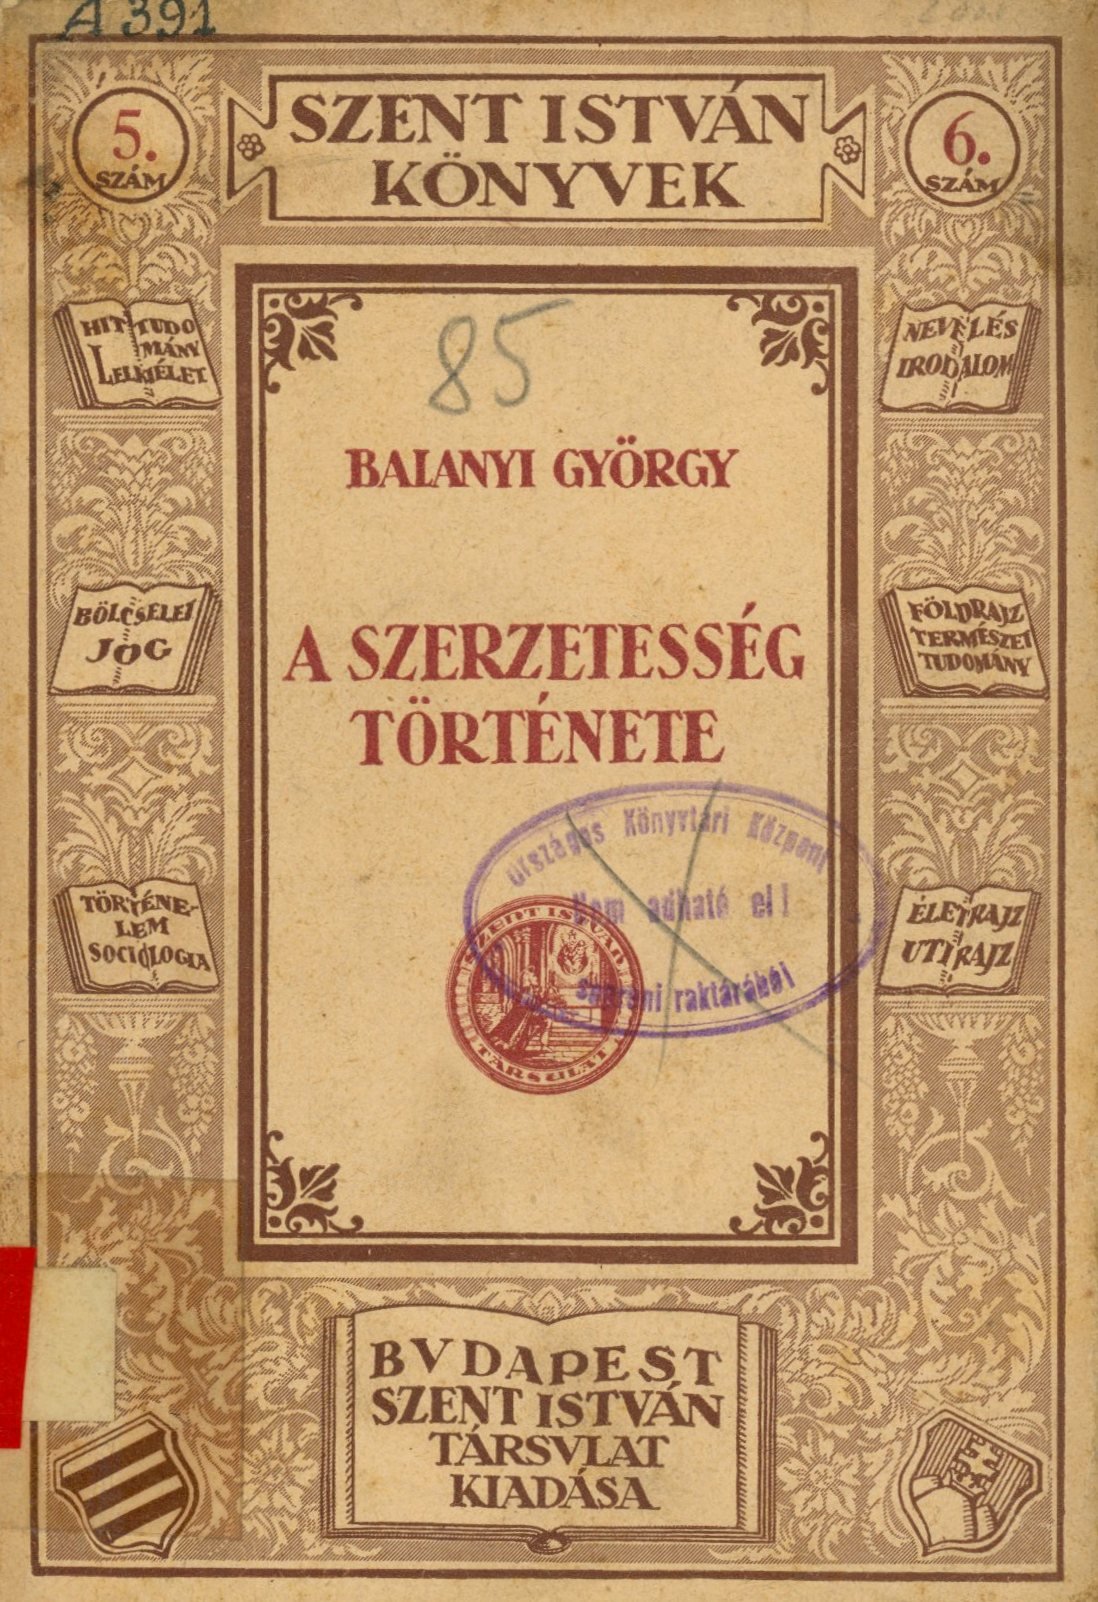 Balanyi György (Erkel Ferenc Területi Múzeum, Gyula CC BY-NC-SA)